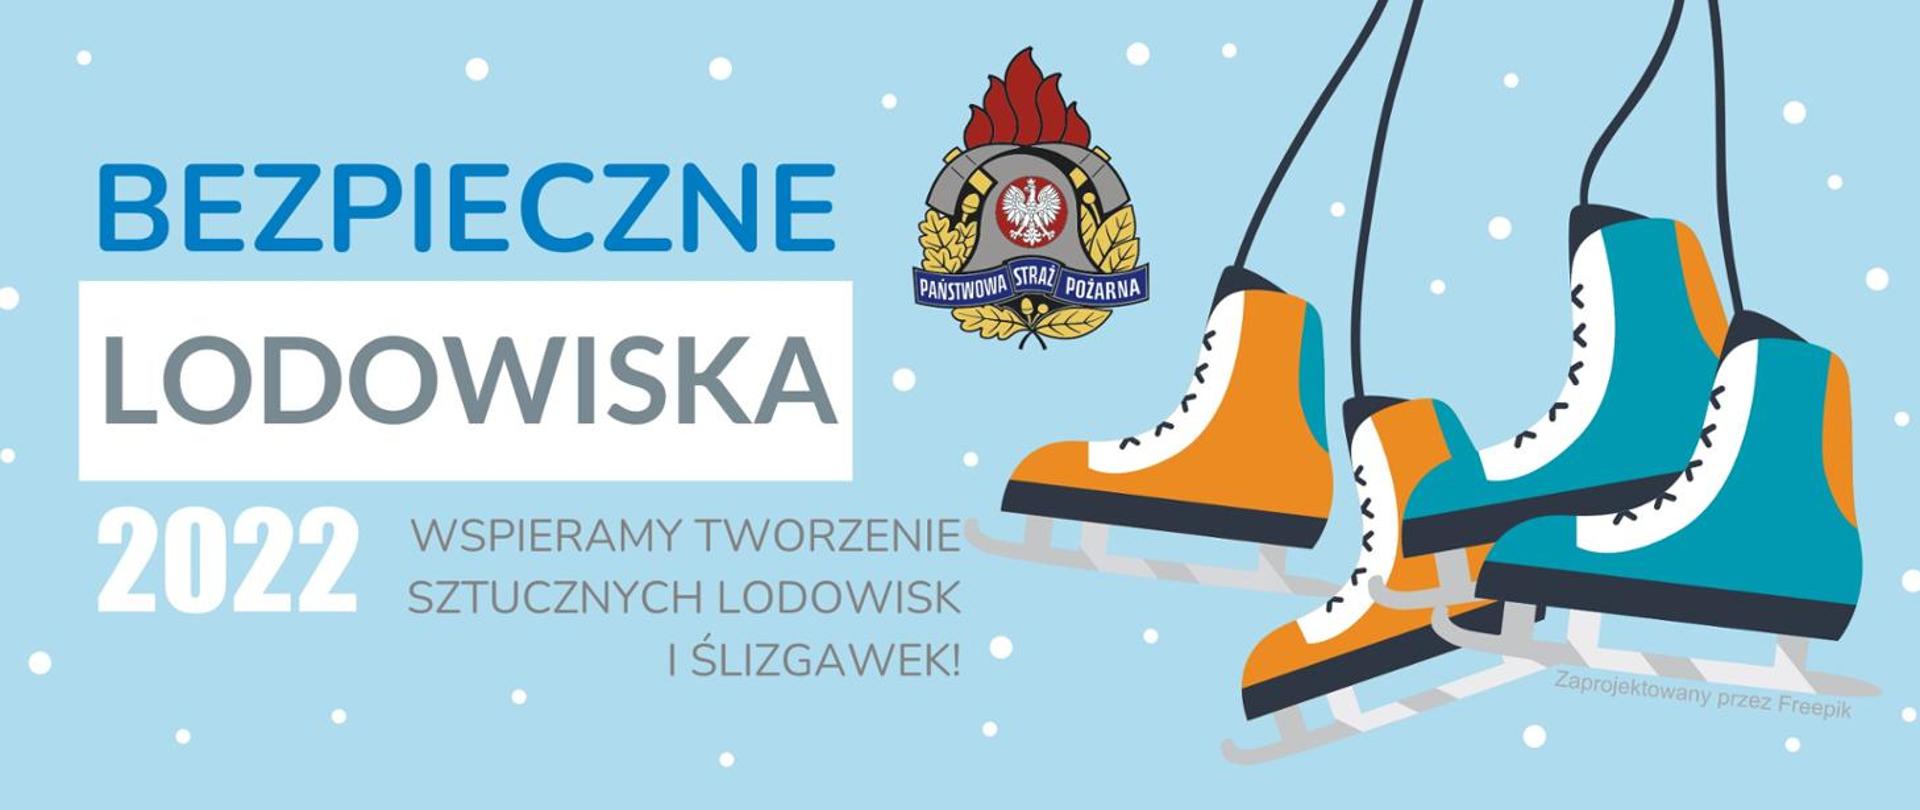 Logotyp akcji "Bezpieczne Lodowiska 2022". Na zdjęciu łyżwy i logo PSP.